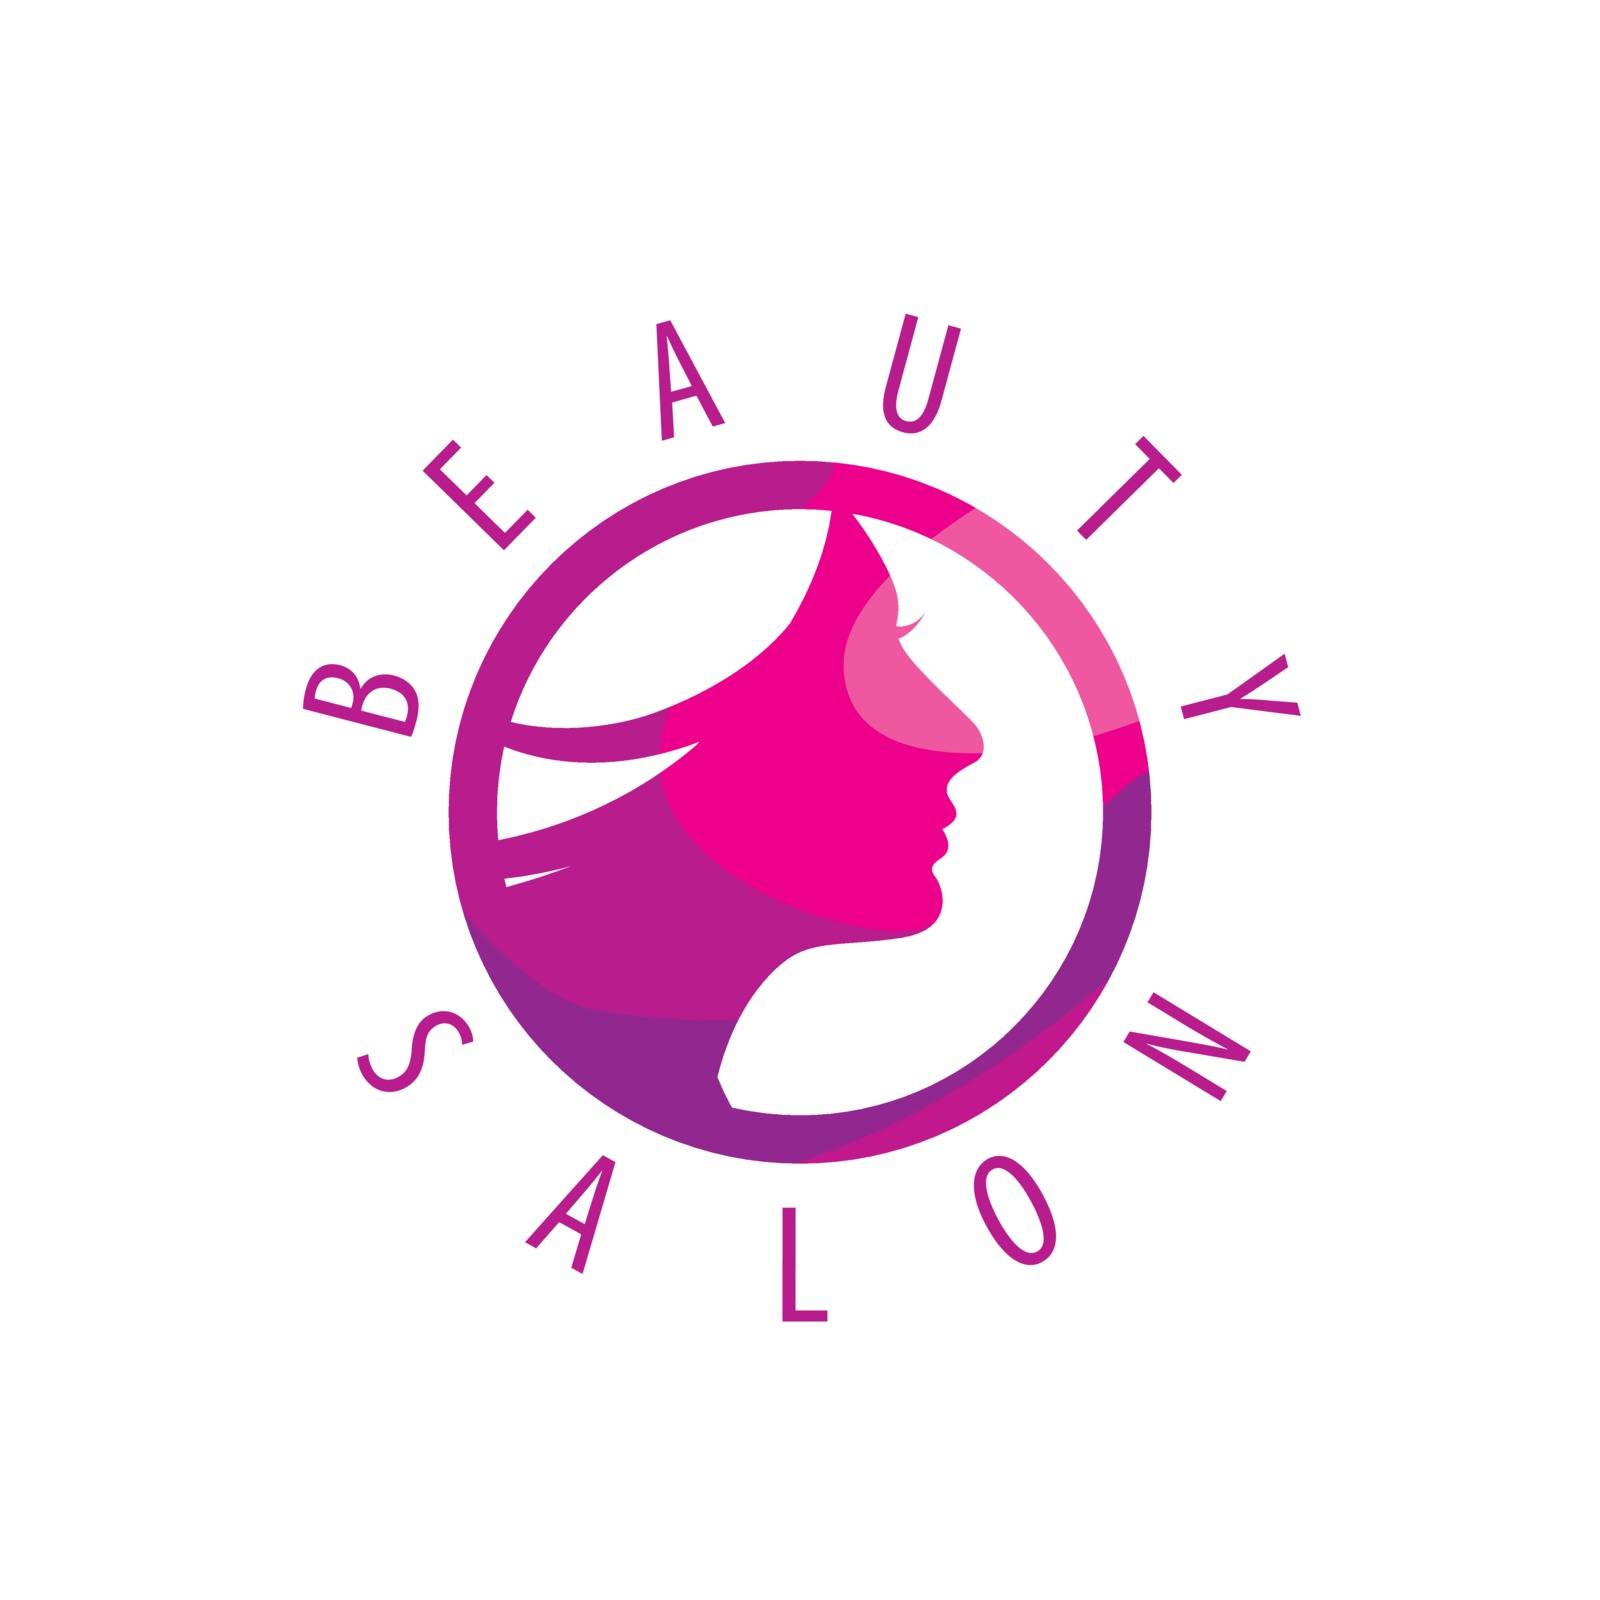 Beauty Female Face Logo Design.Cosmetic salon logo design. Creative Woman Face Vector